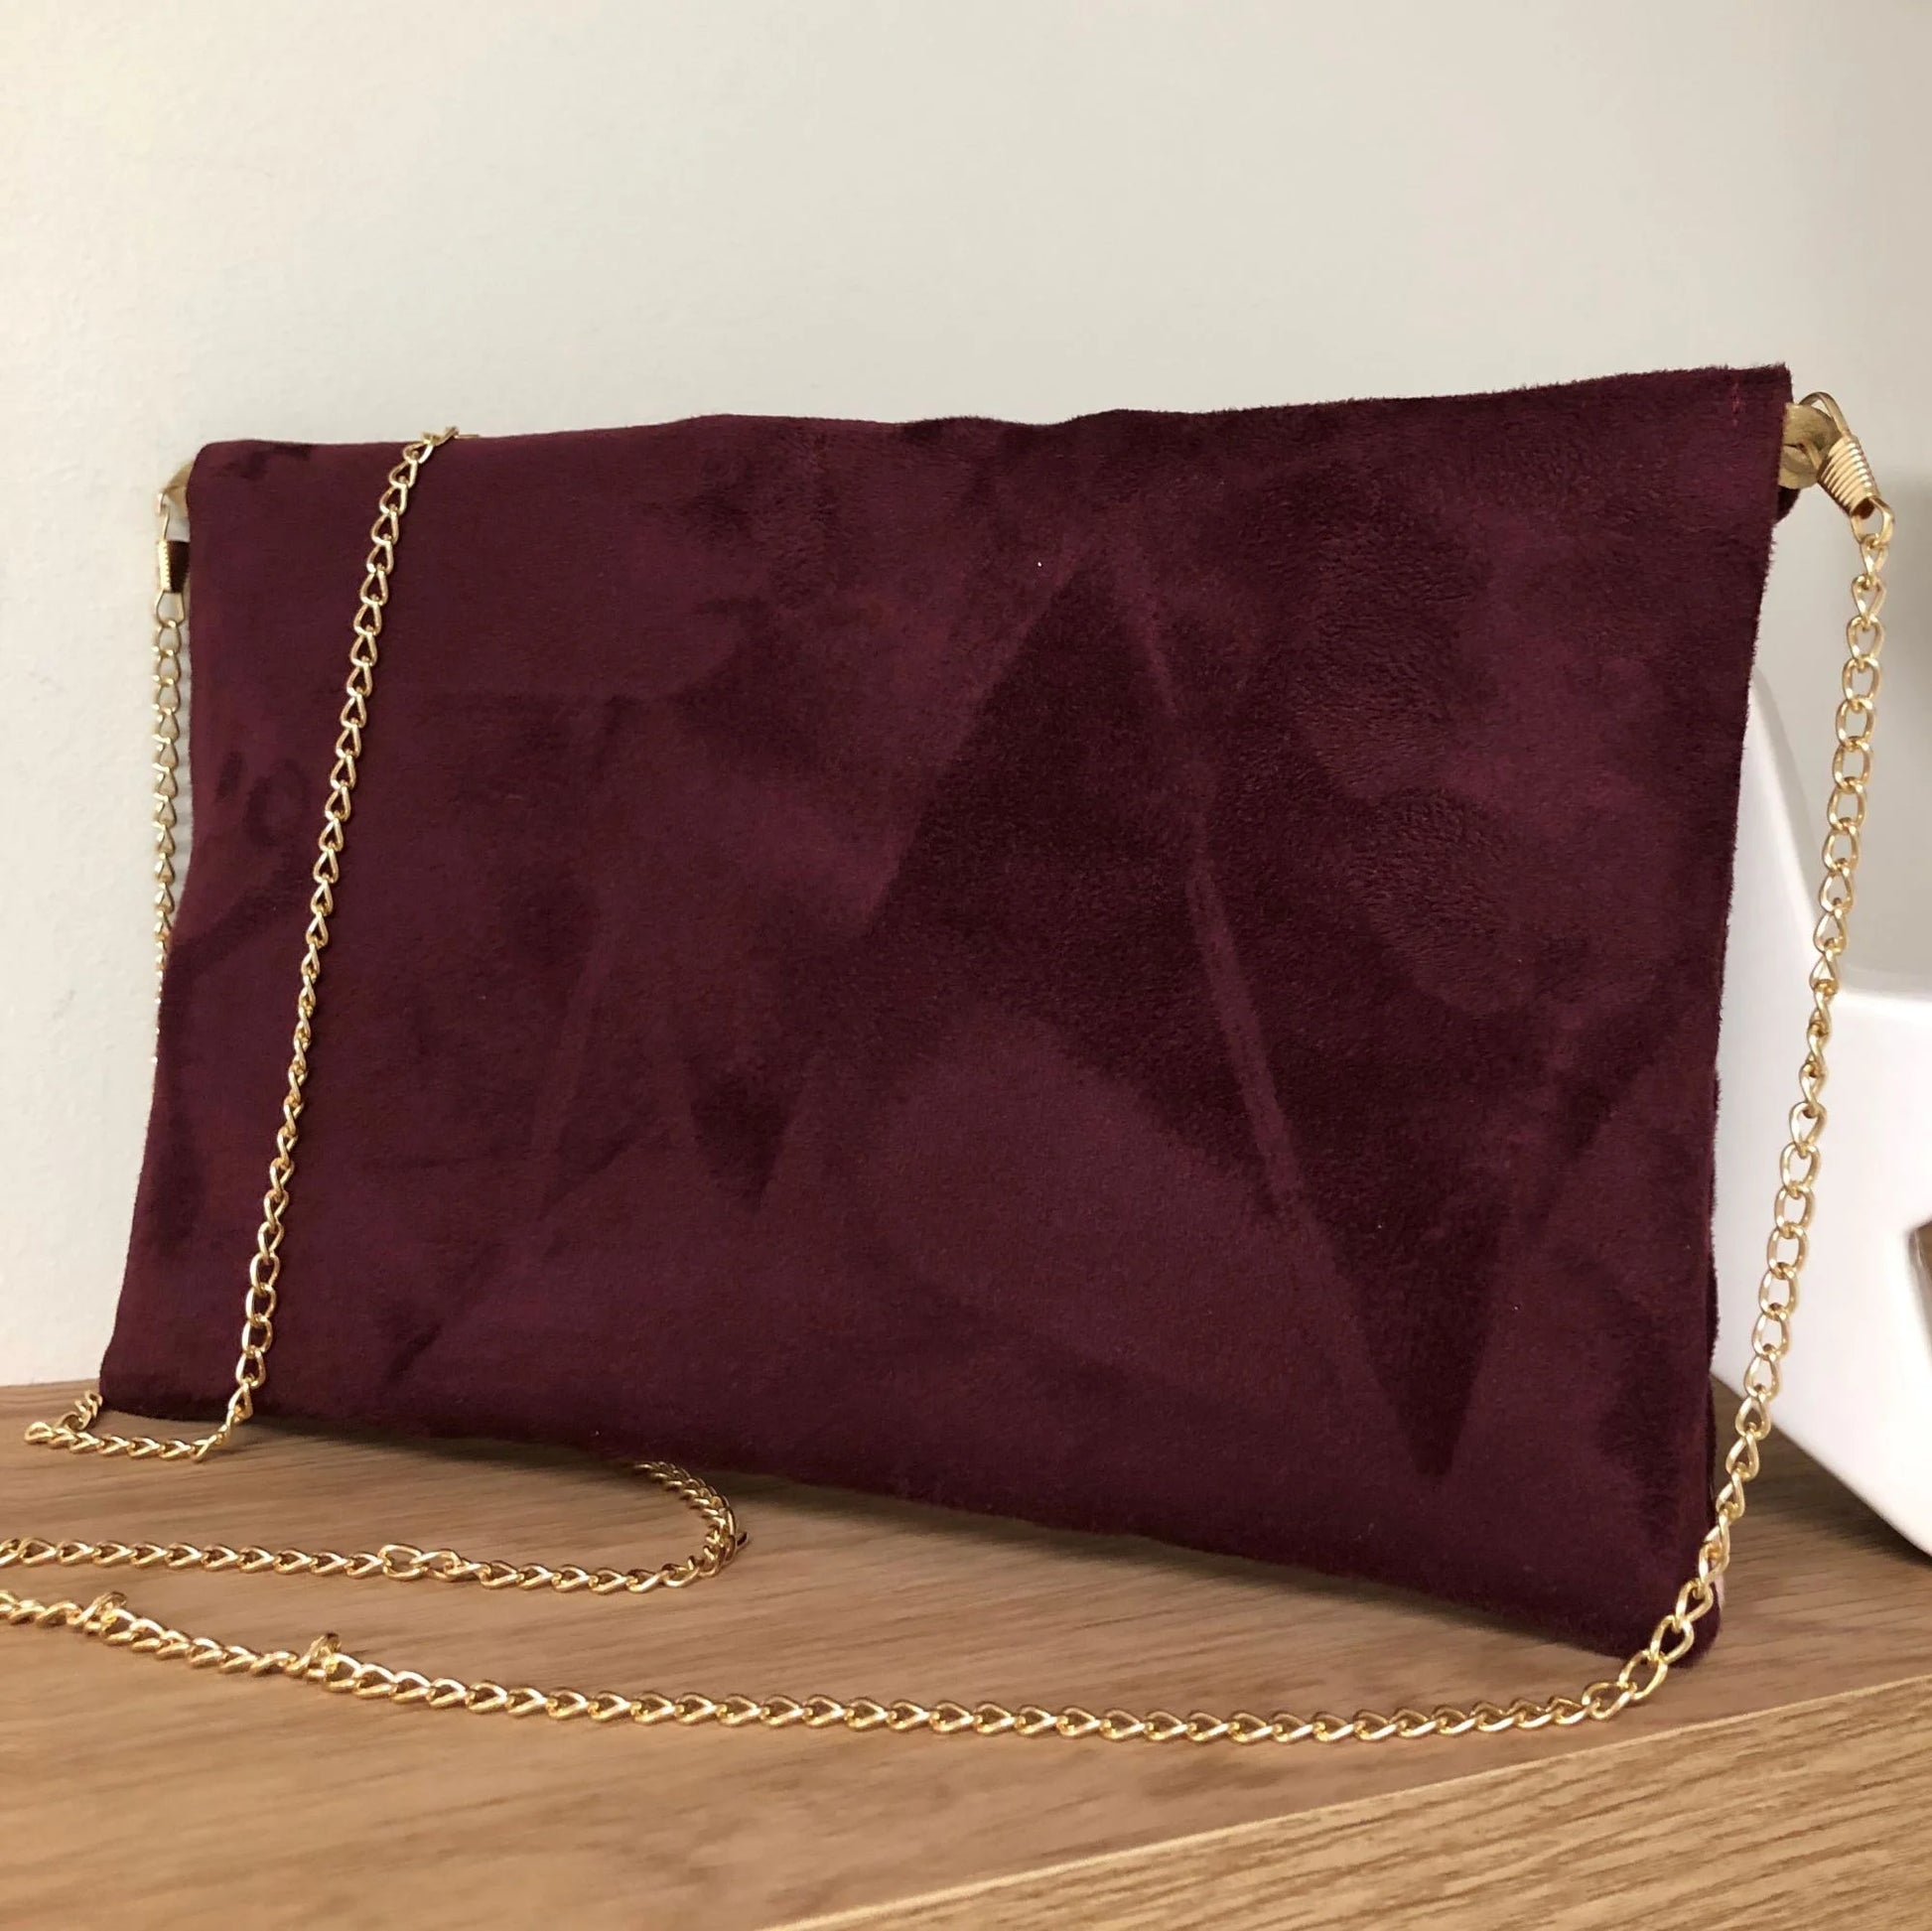 Le dos du sac pochette Isa bordeaux et rose pâle à paillettes dorées